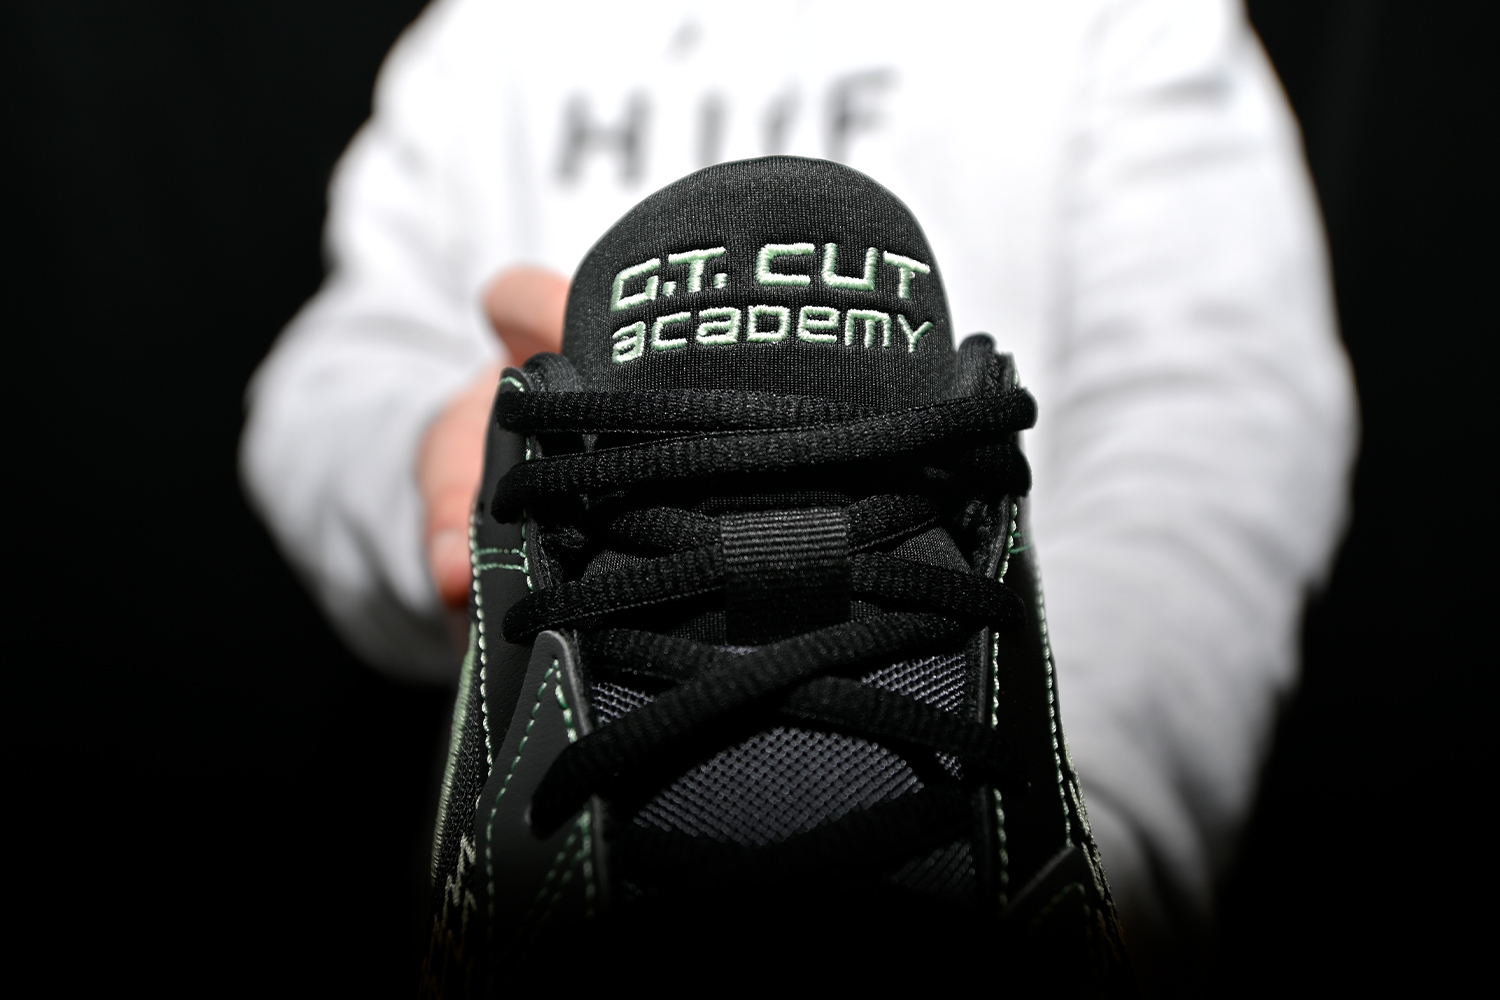 勘履訪客/ 實戰神鞋平價款登場Nike G.T. Cut Academy 試穿第一印象分享